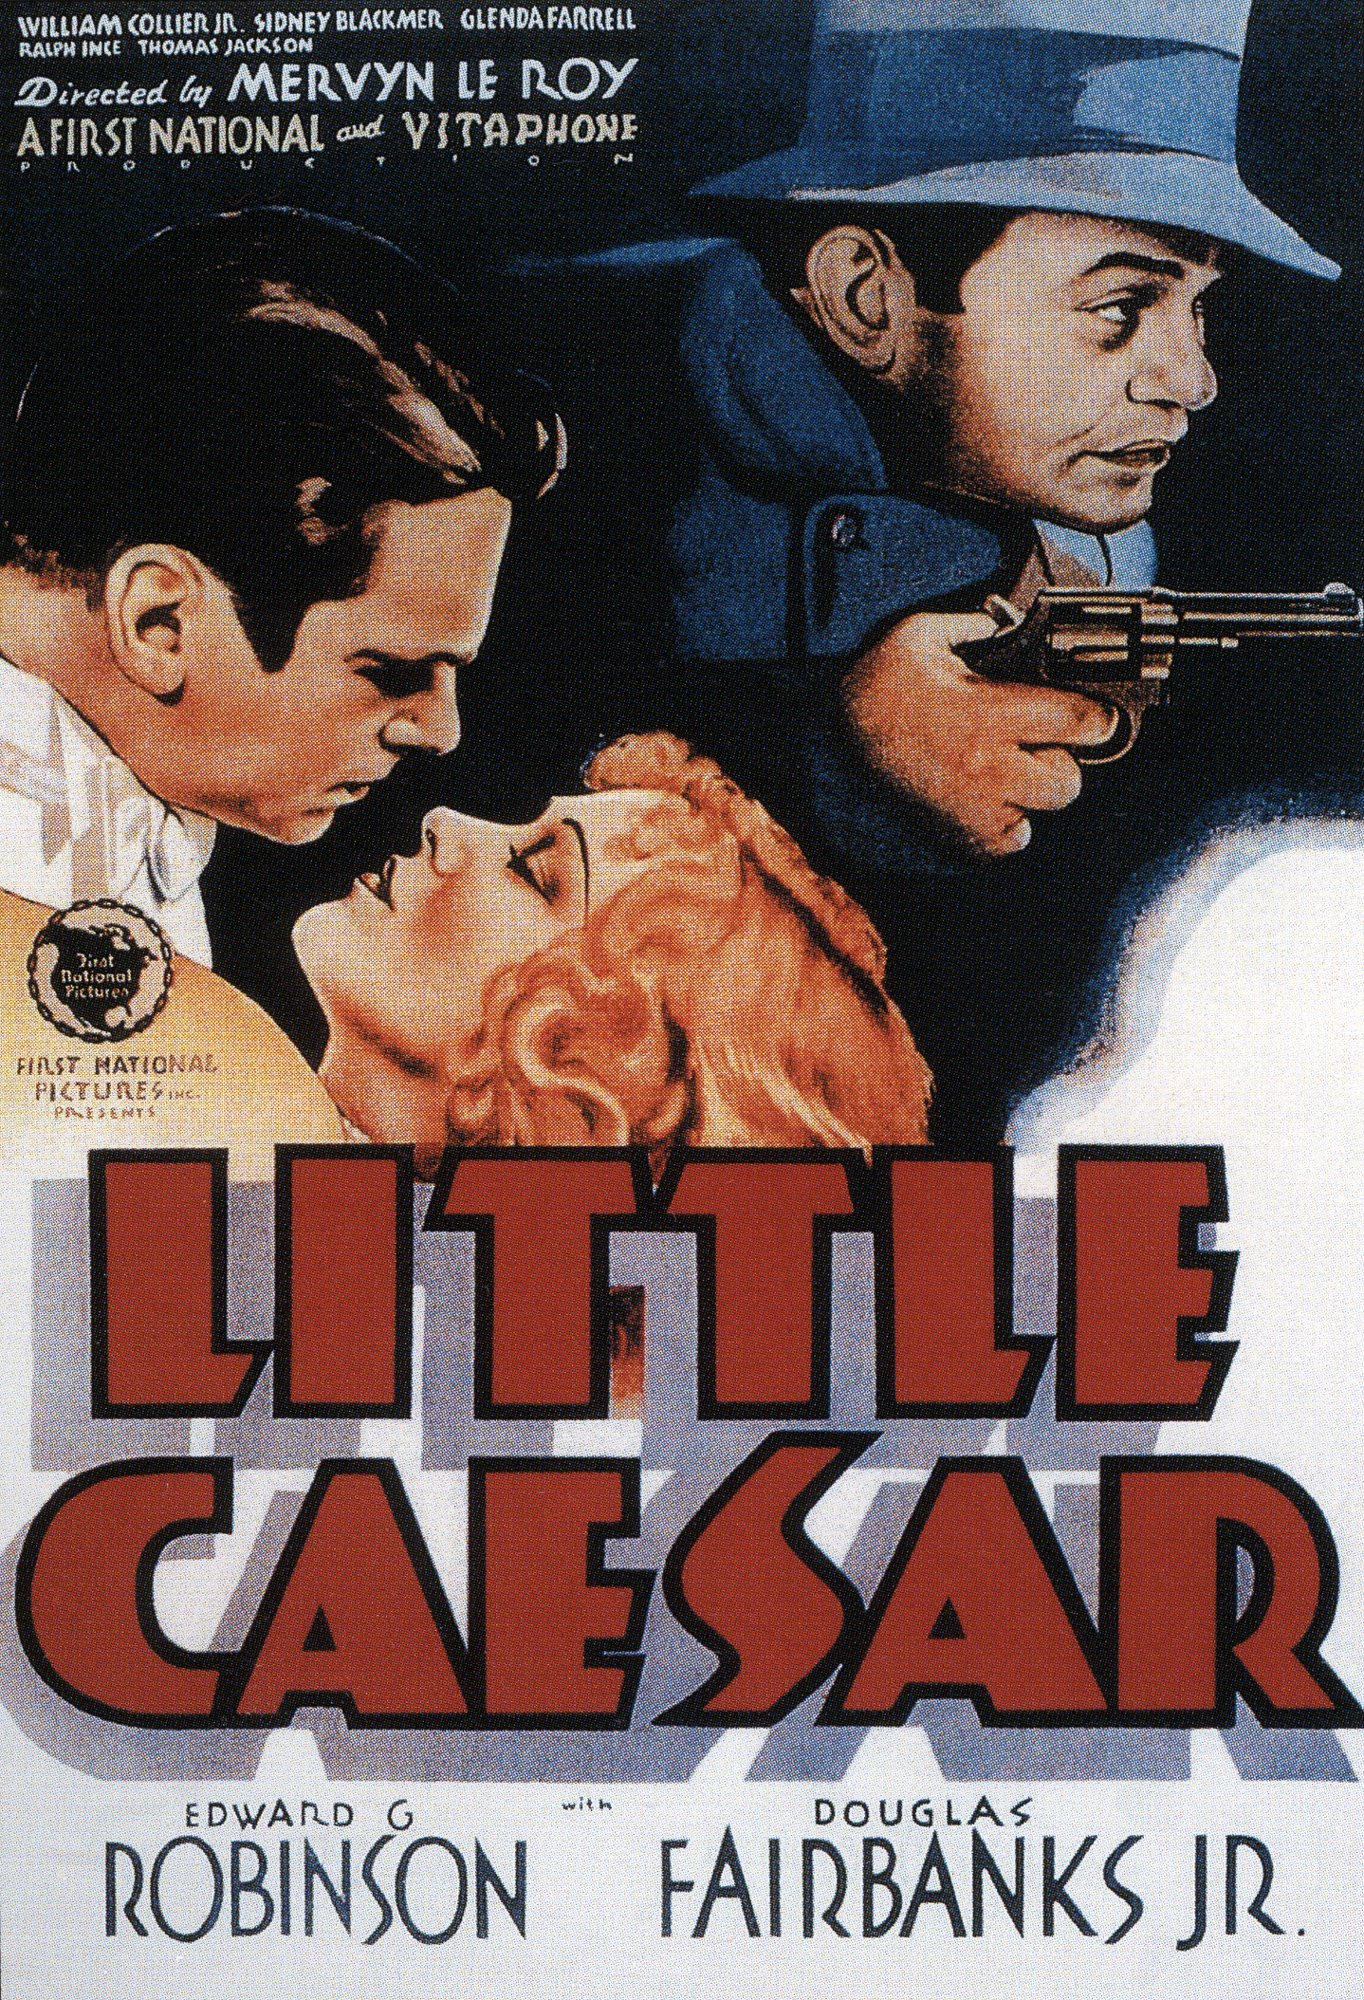 Nonton film Little Caesar layarkaca21 indoxx1 ganool online streaming terbaru